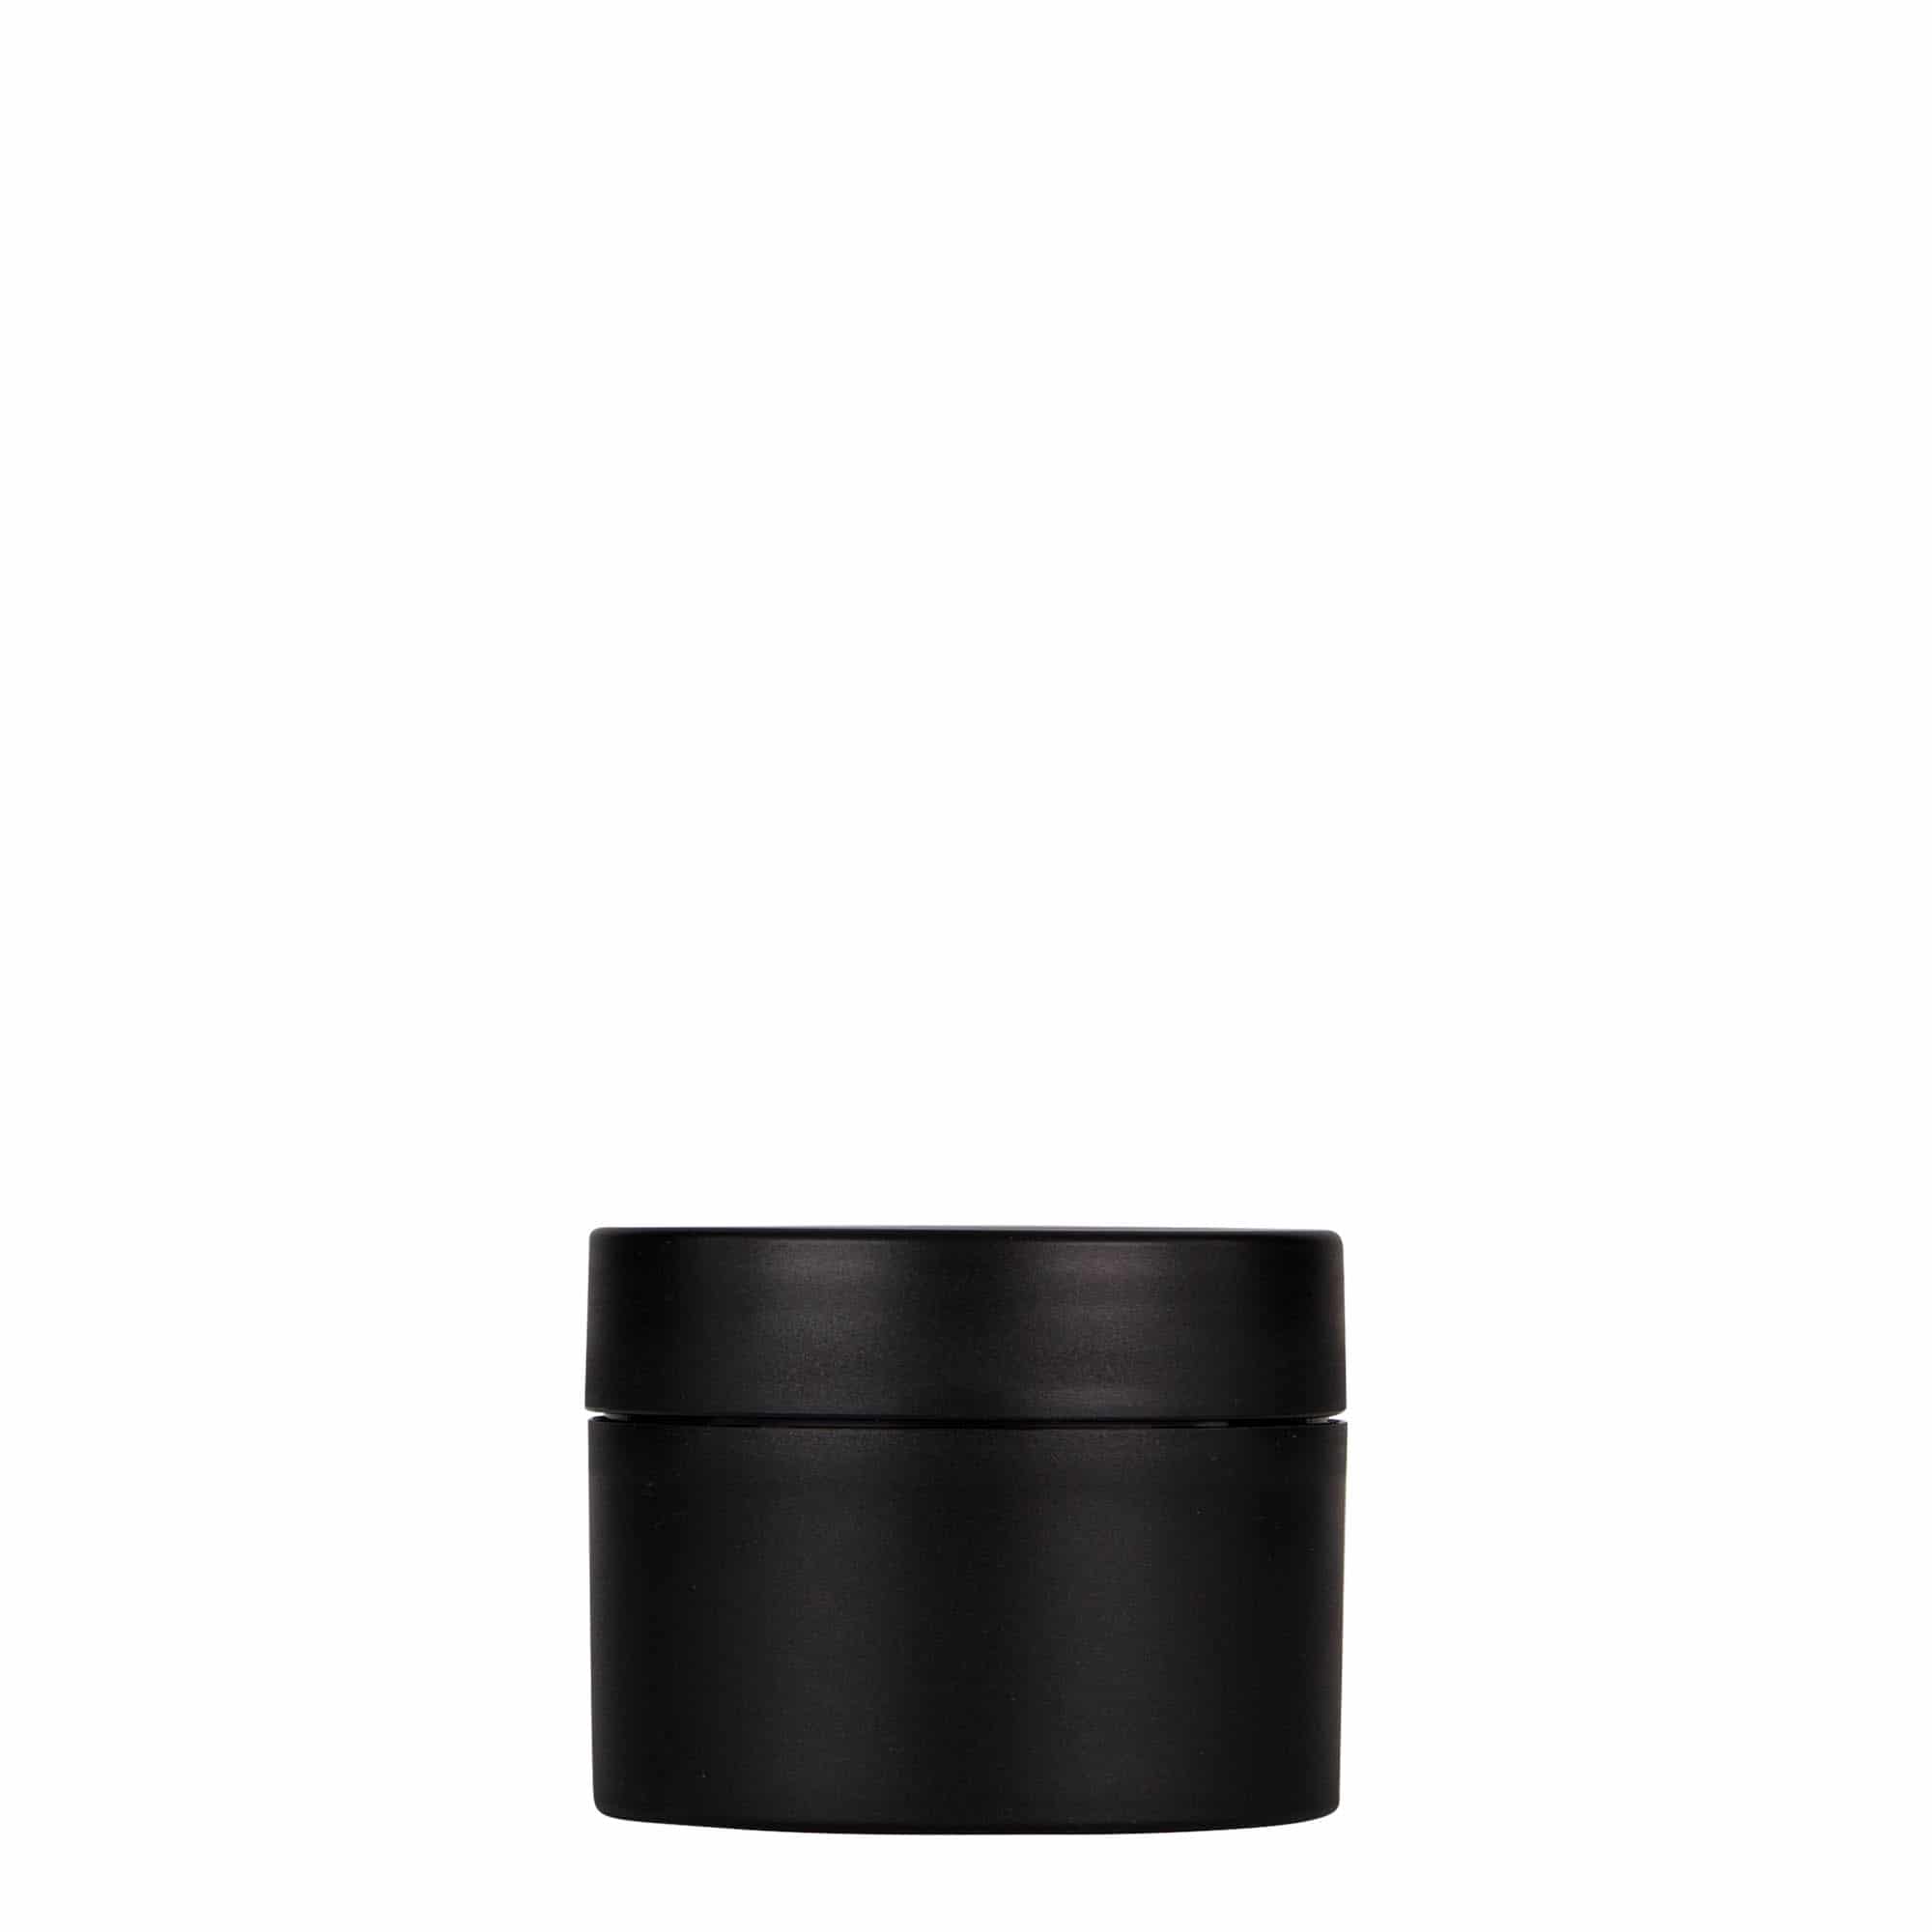 50 ml plastic jar 'Antonella', PP, black, closure: screw cap